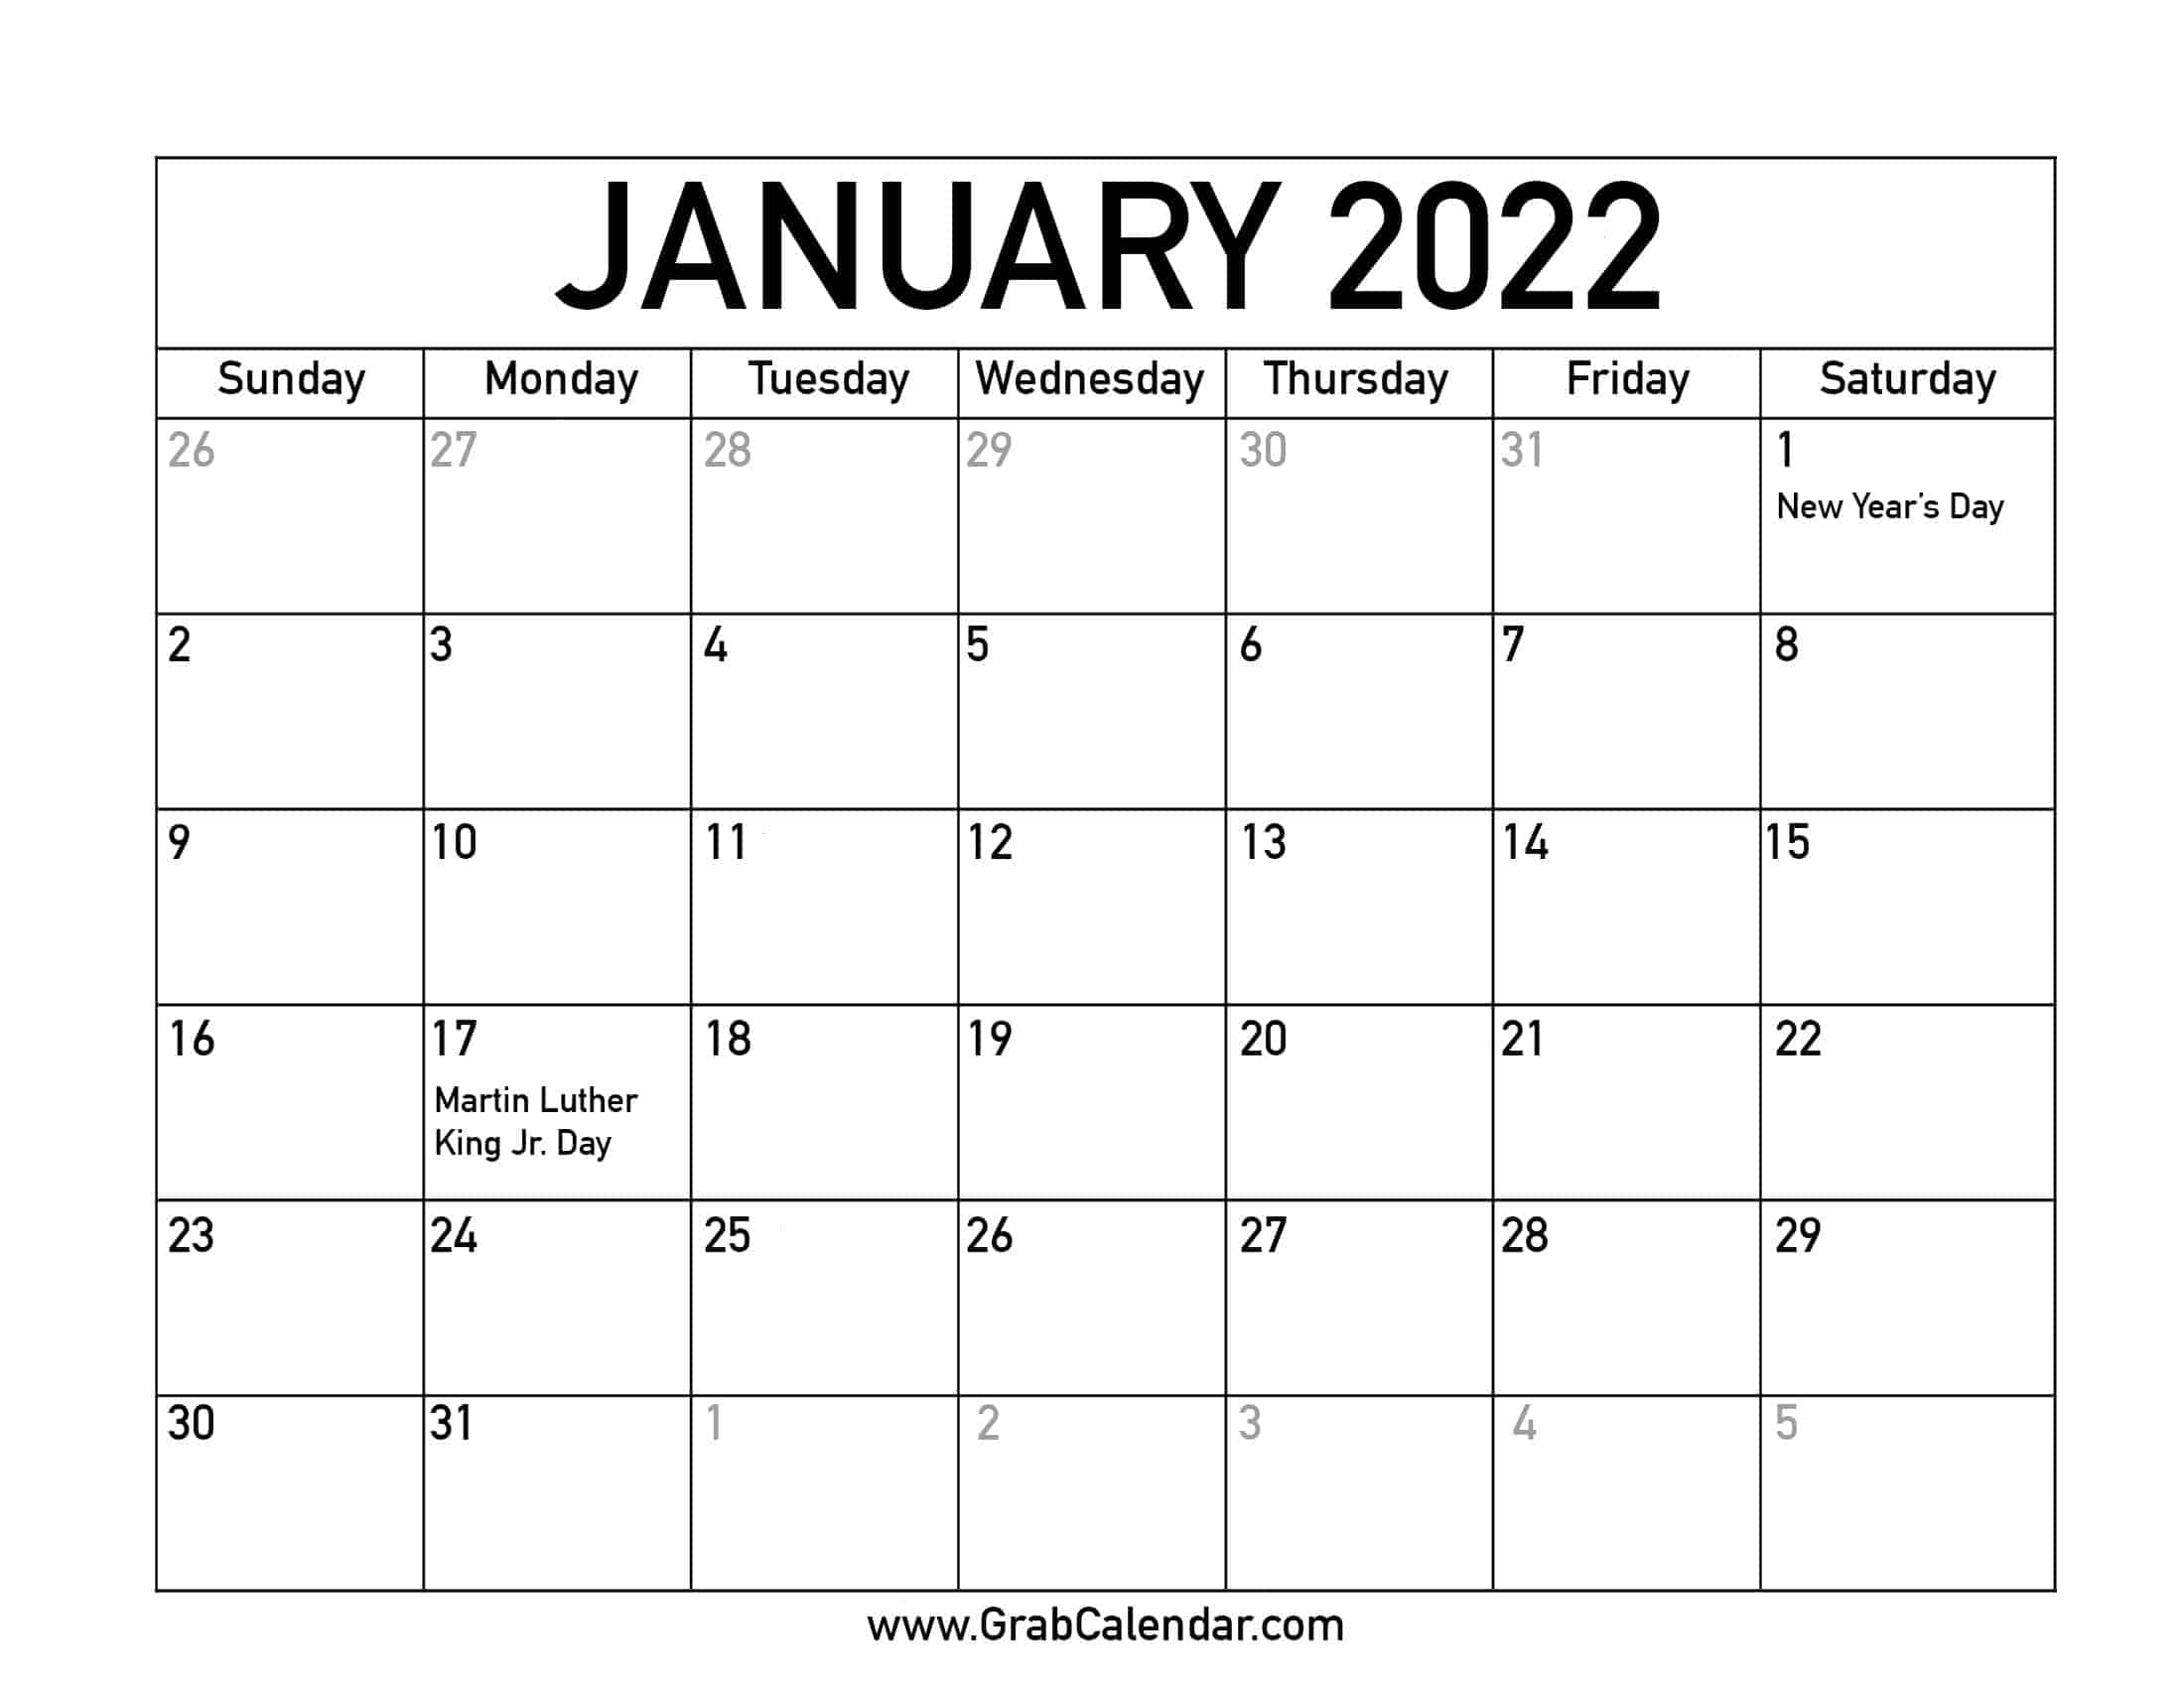 Jan 2022 calendar